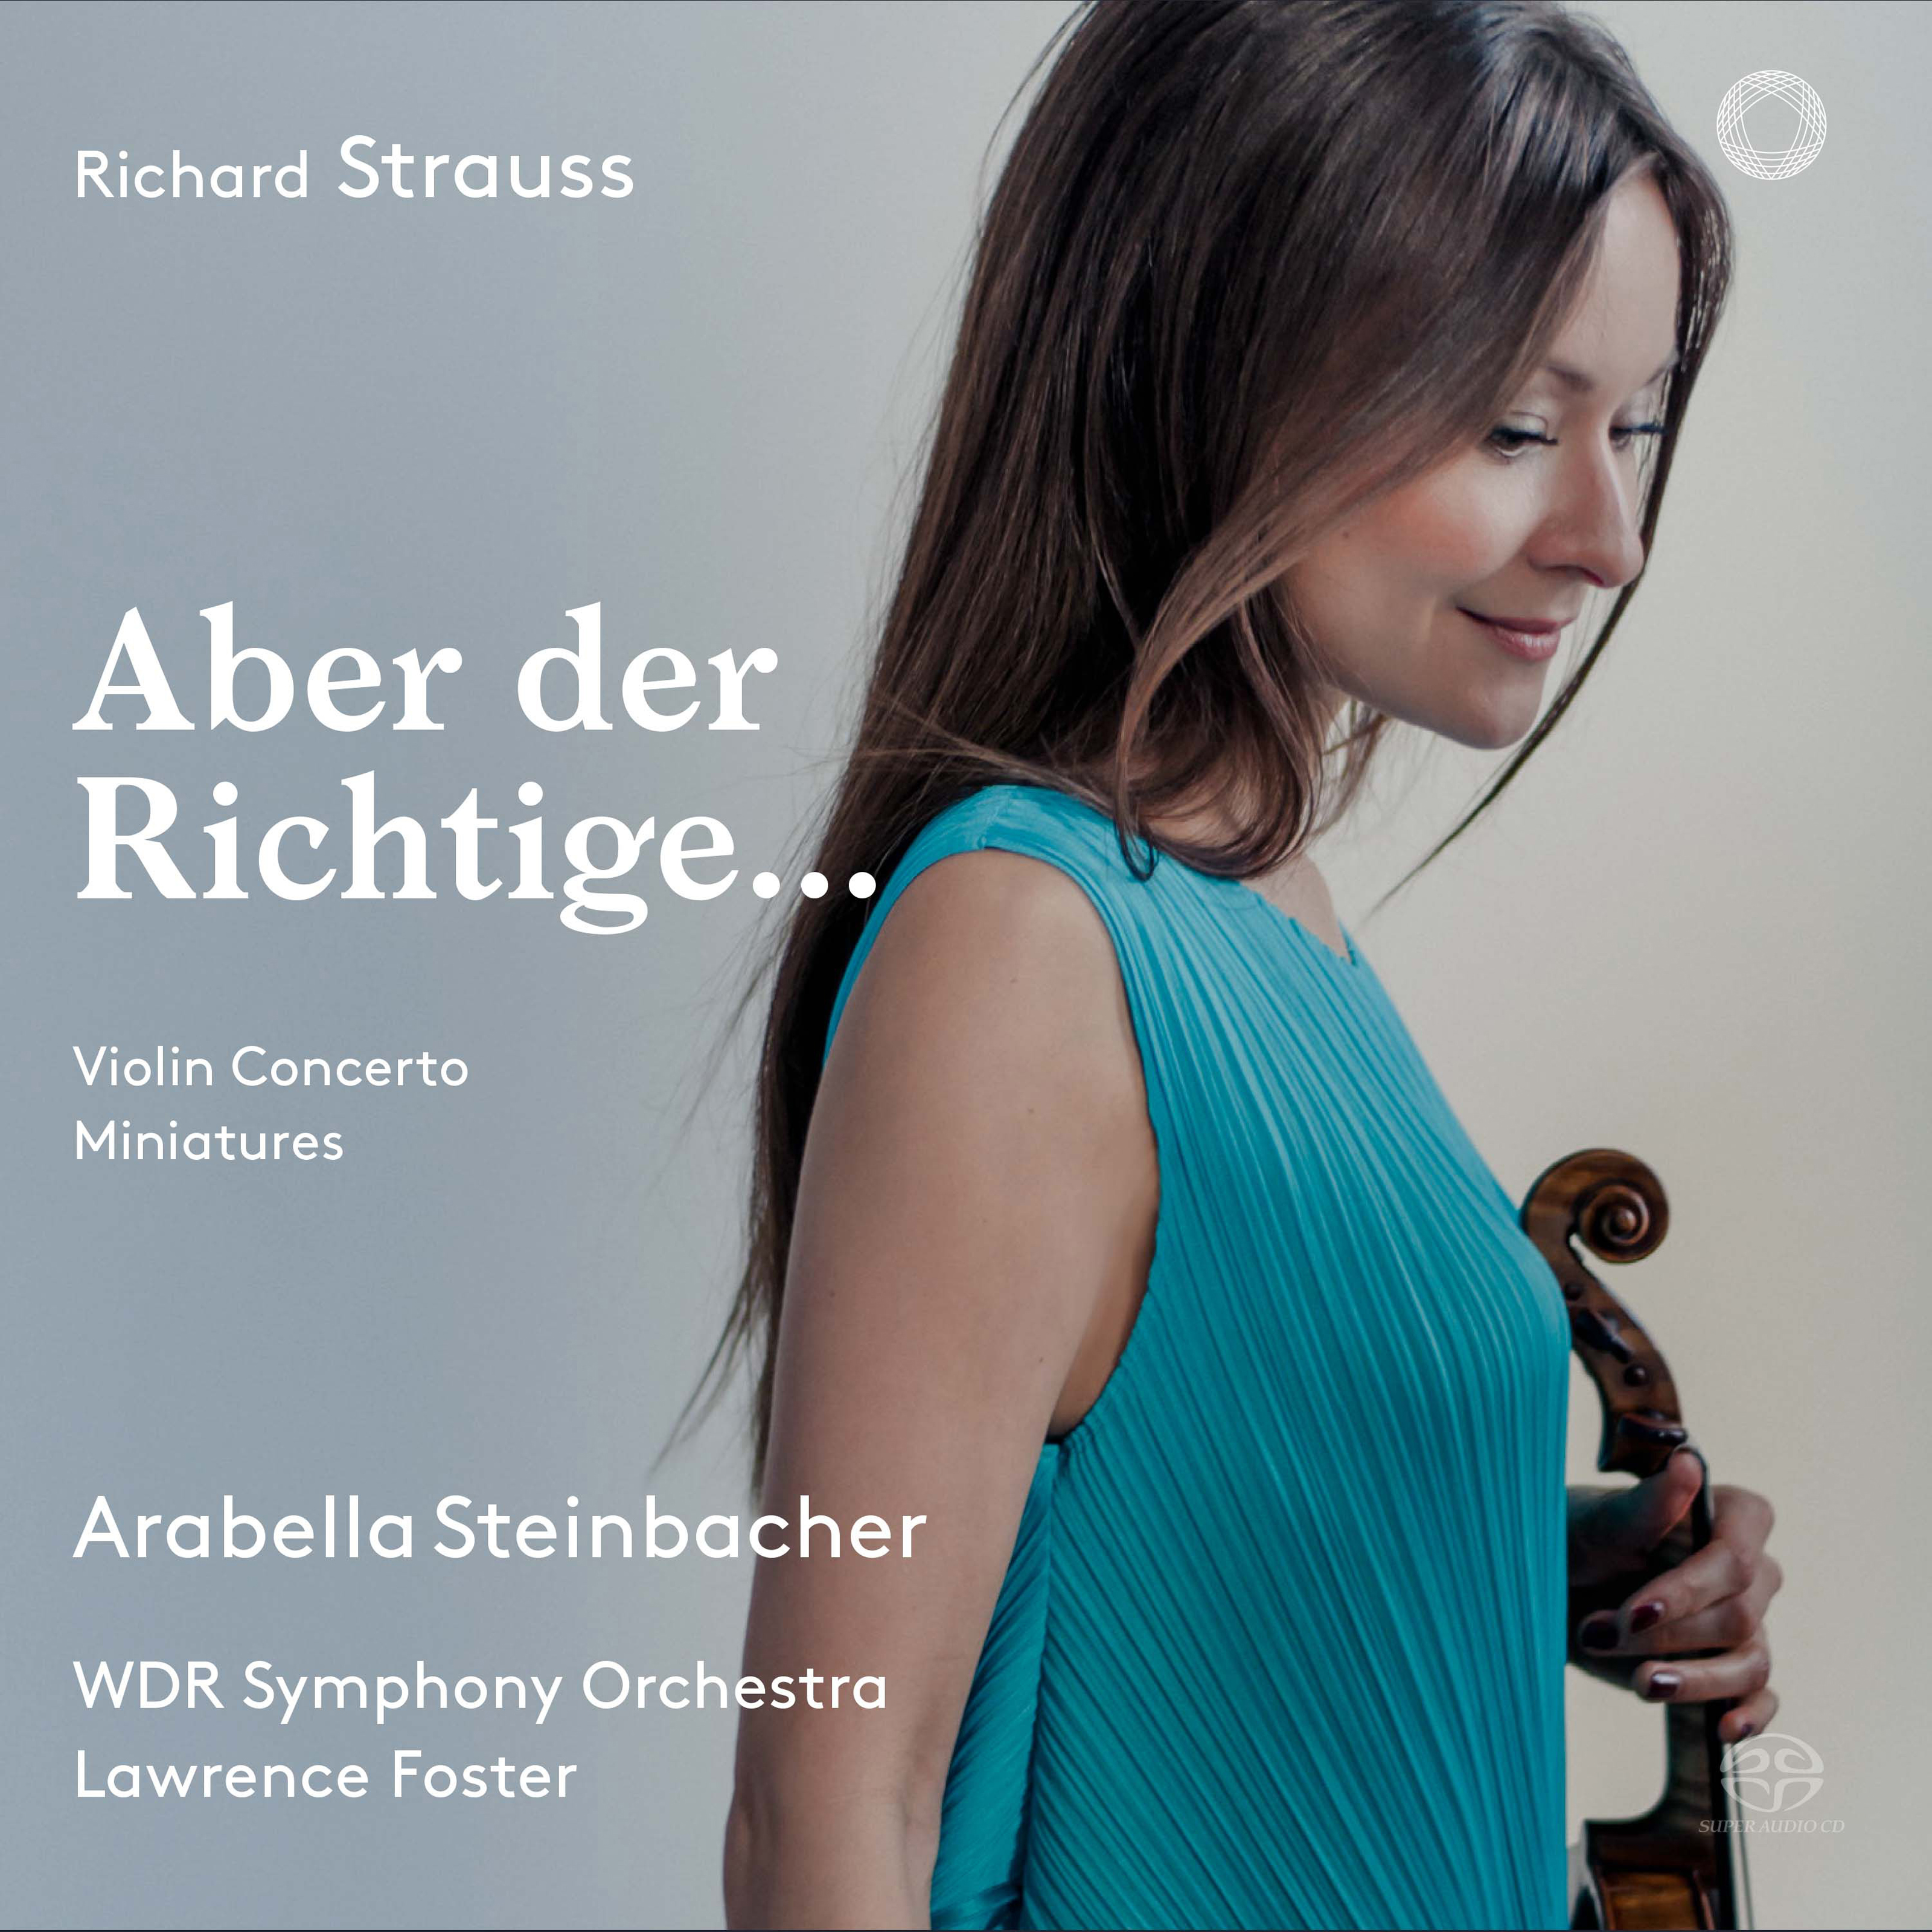 Arabella, Op. 79, TrV 263: Aber der Richtige, wenn's einen gibt (Arr. P. von Wienhardt for Violin & Orchestra)